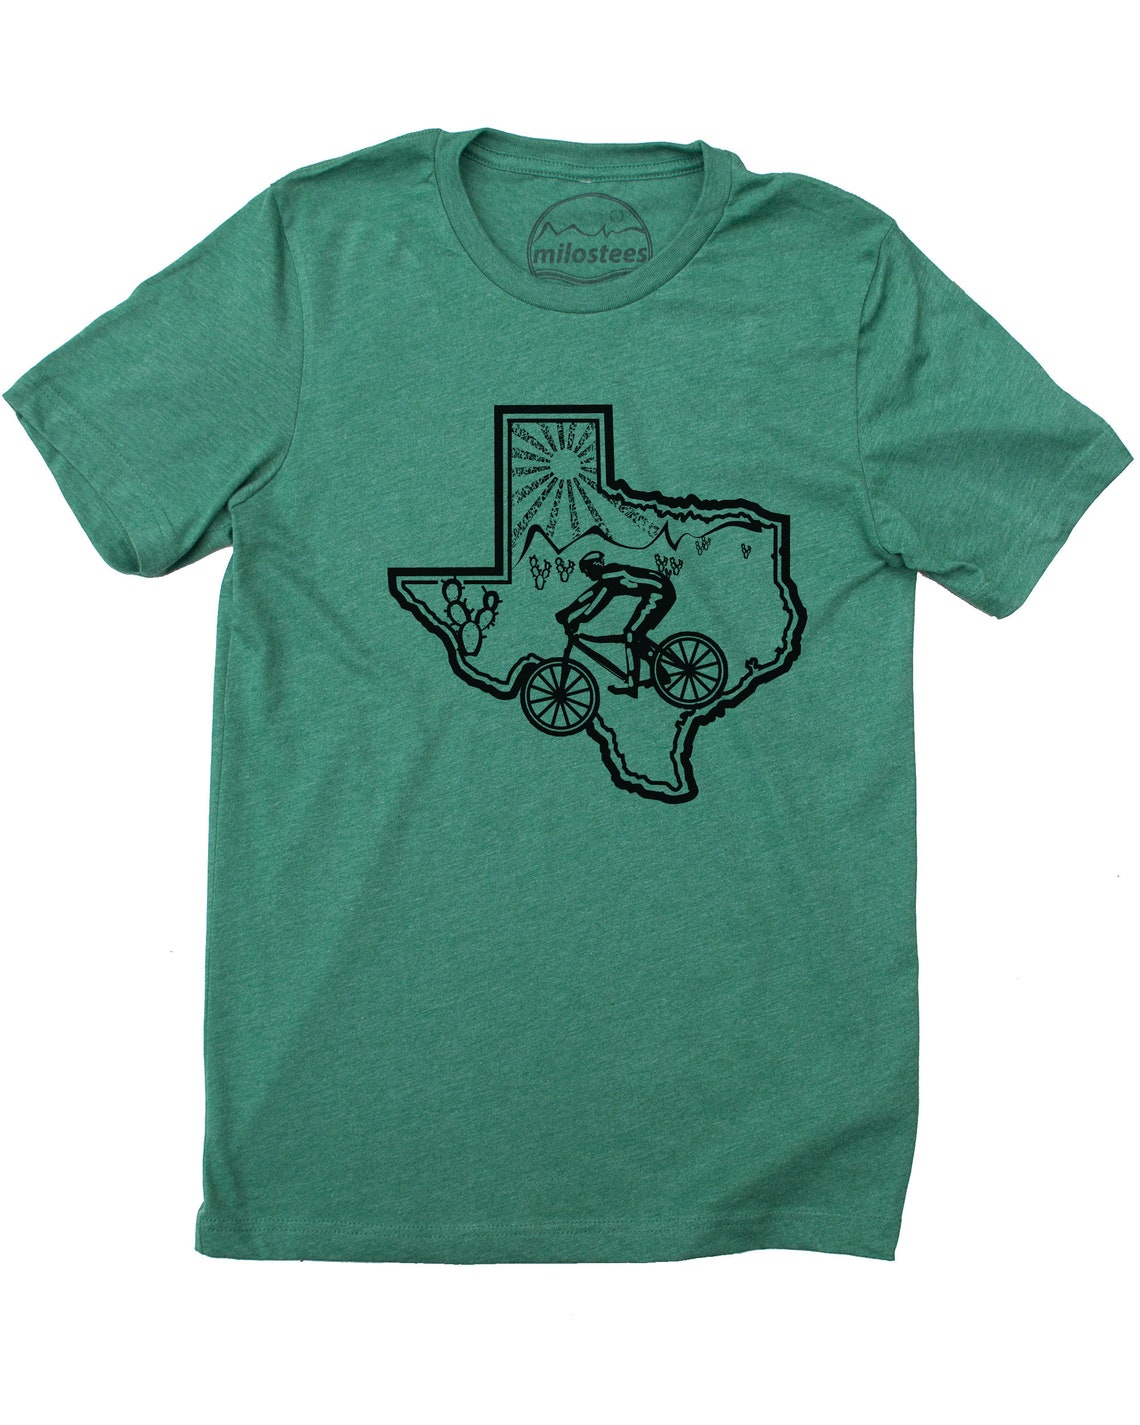 Texas Home Shirt, Original Design Hand Printed on Soft Shirt Great for ...